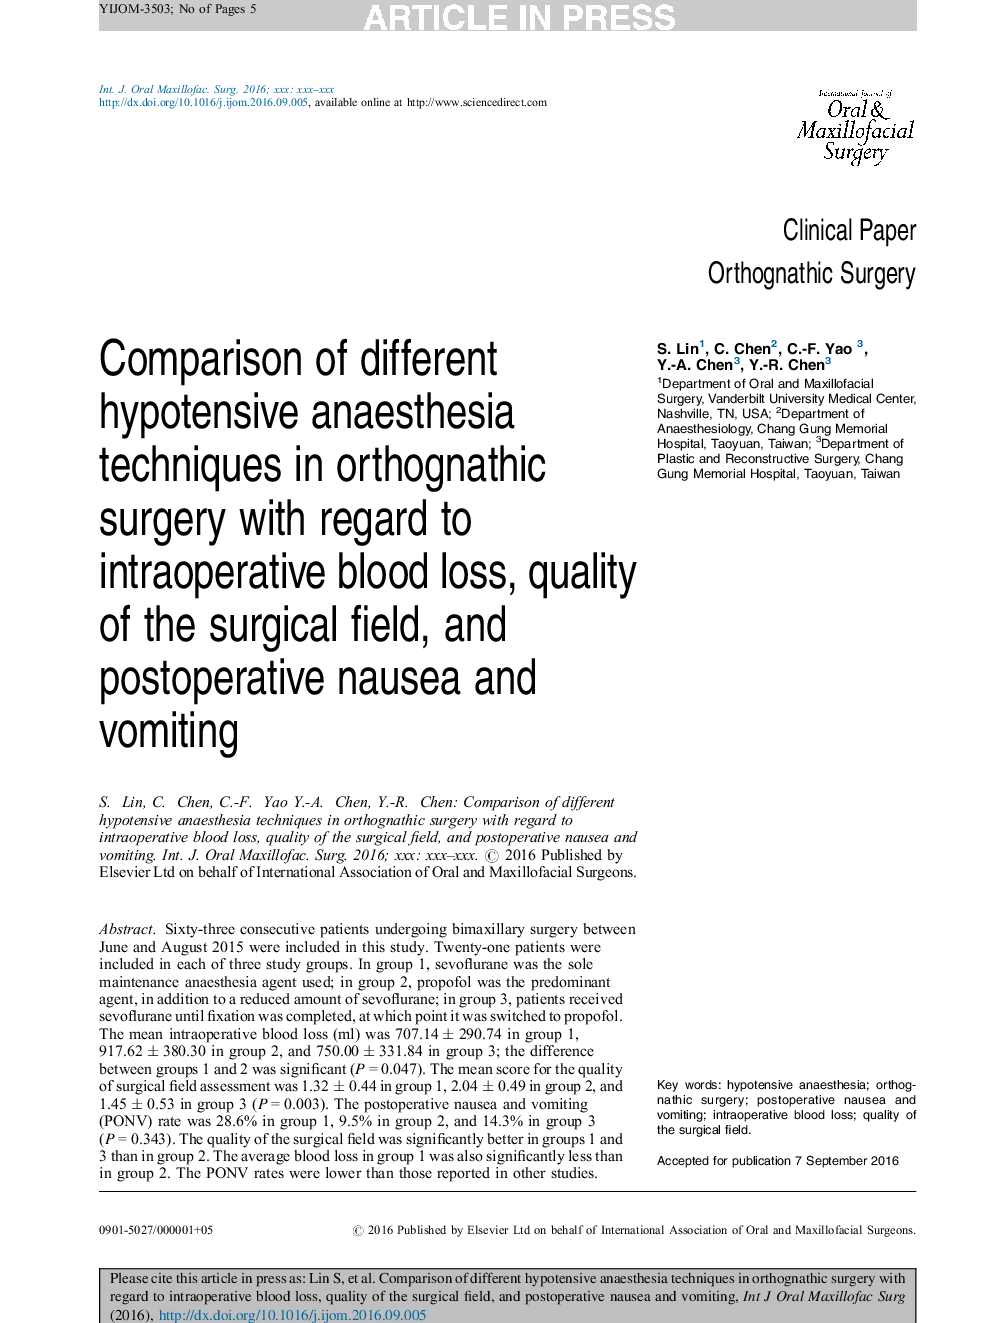 مقایسه روشهای مختلف بیهوشی هیپوتانینی در جراحی ارتوگناتیک با توجه به افتادن خون در حین عمل جراحی، کیفیت جراحی و تهوع و استفراغ پس از عمل 